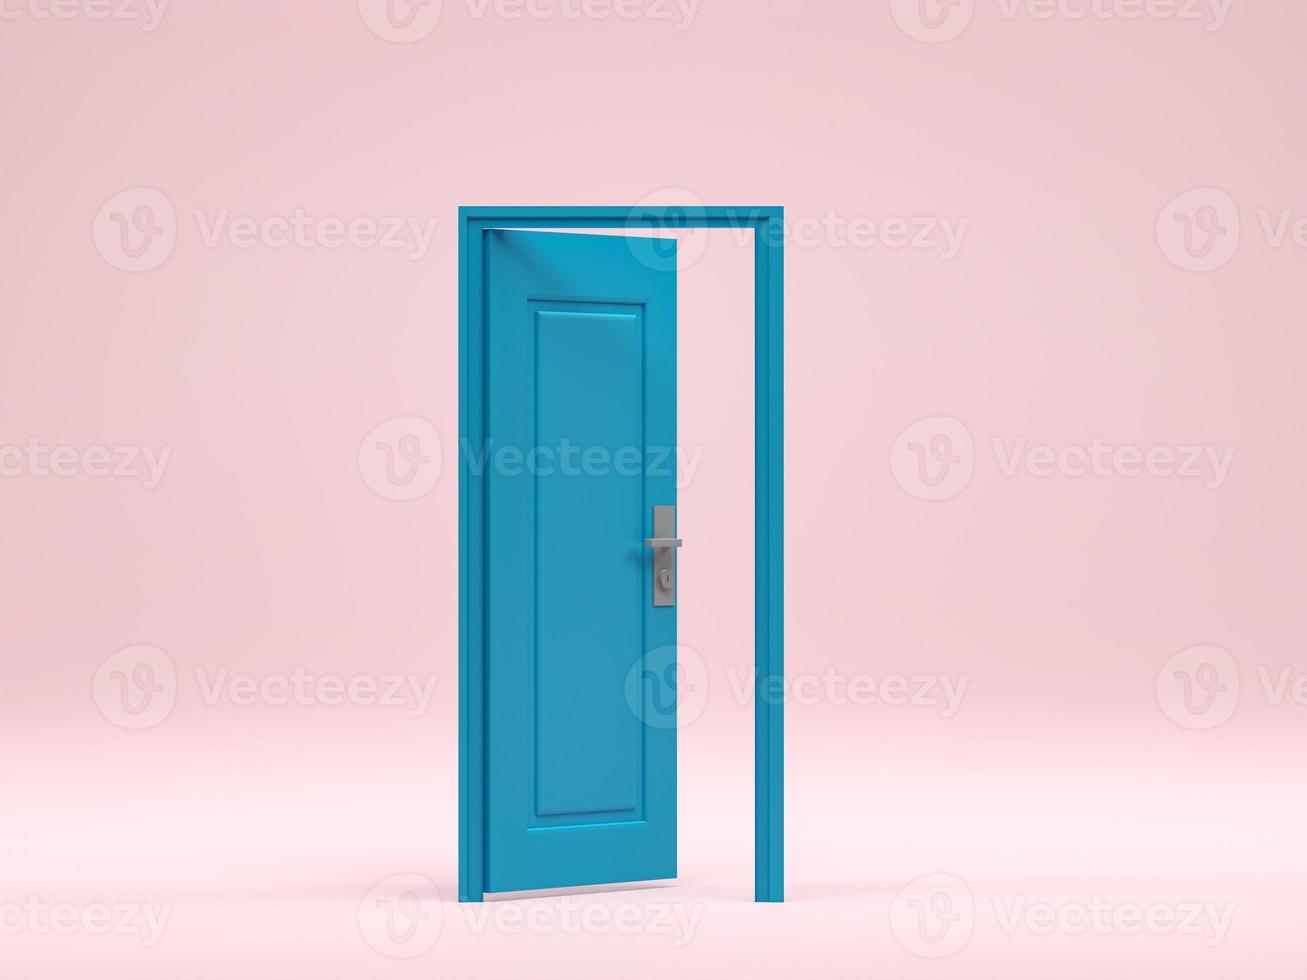 rendu 3d, illustration 3d. entrée de porte ouverte bleue dans la salle de fond rose. idée d'intérieur minimale créative. photo